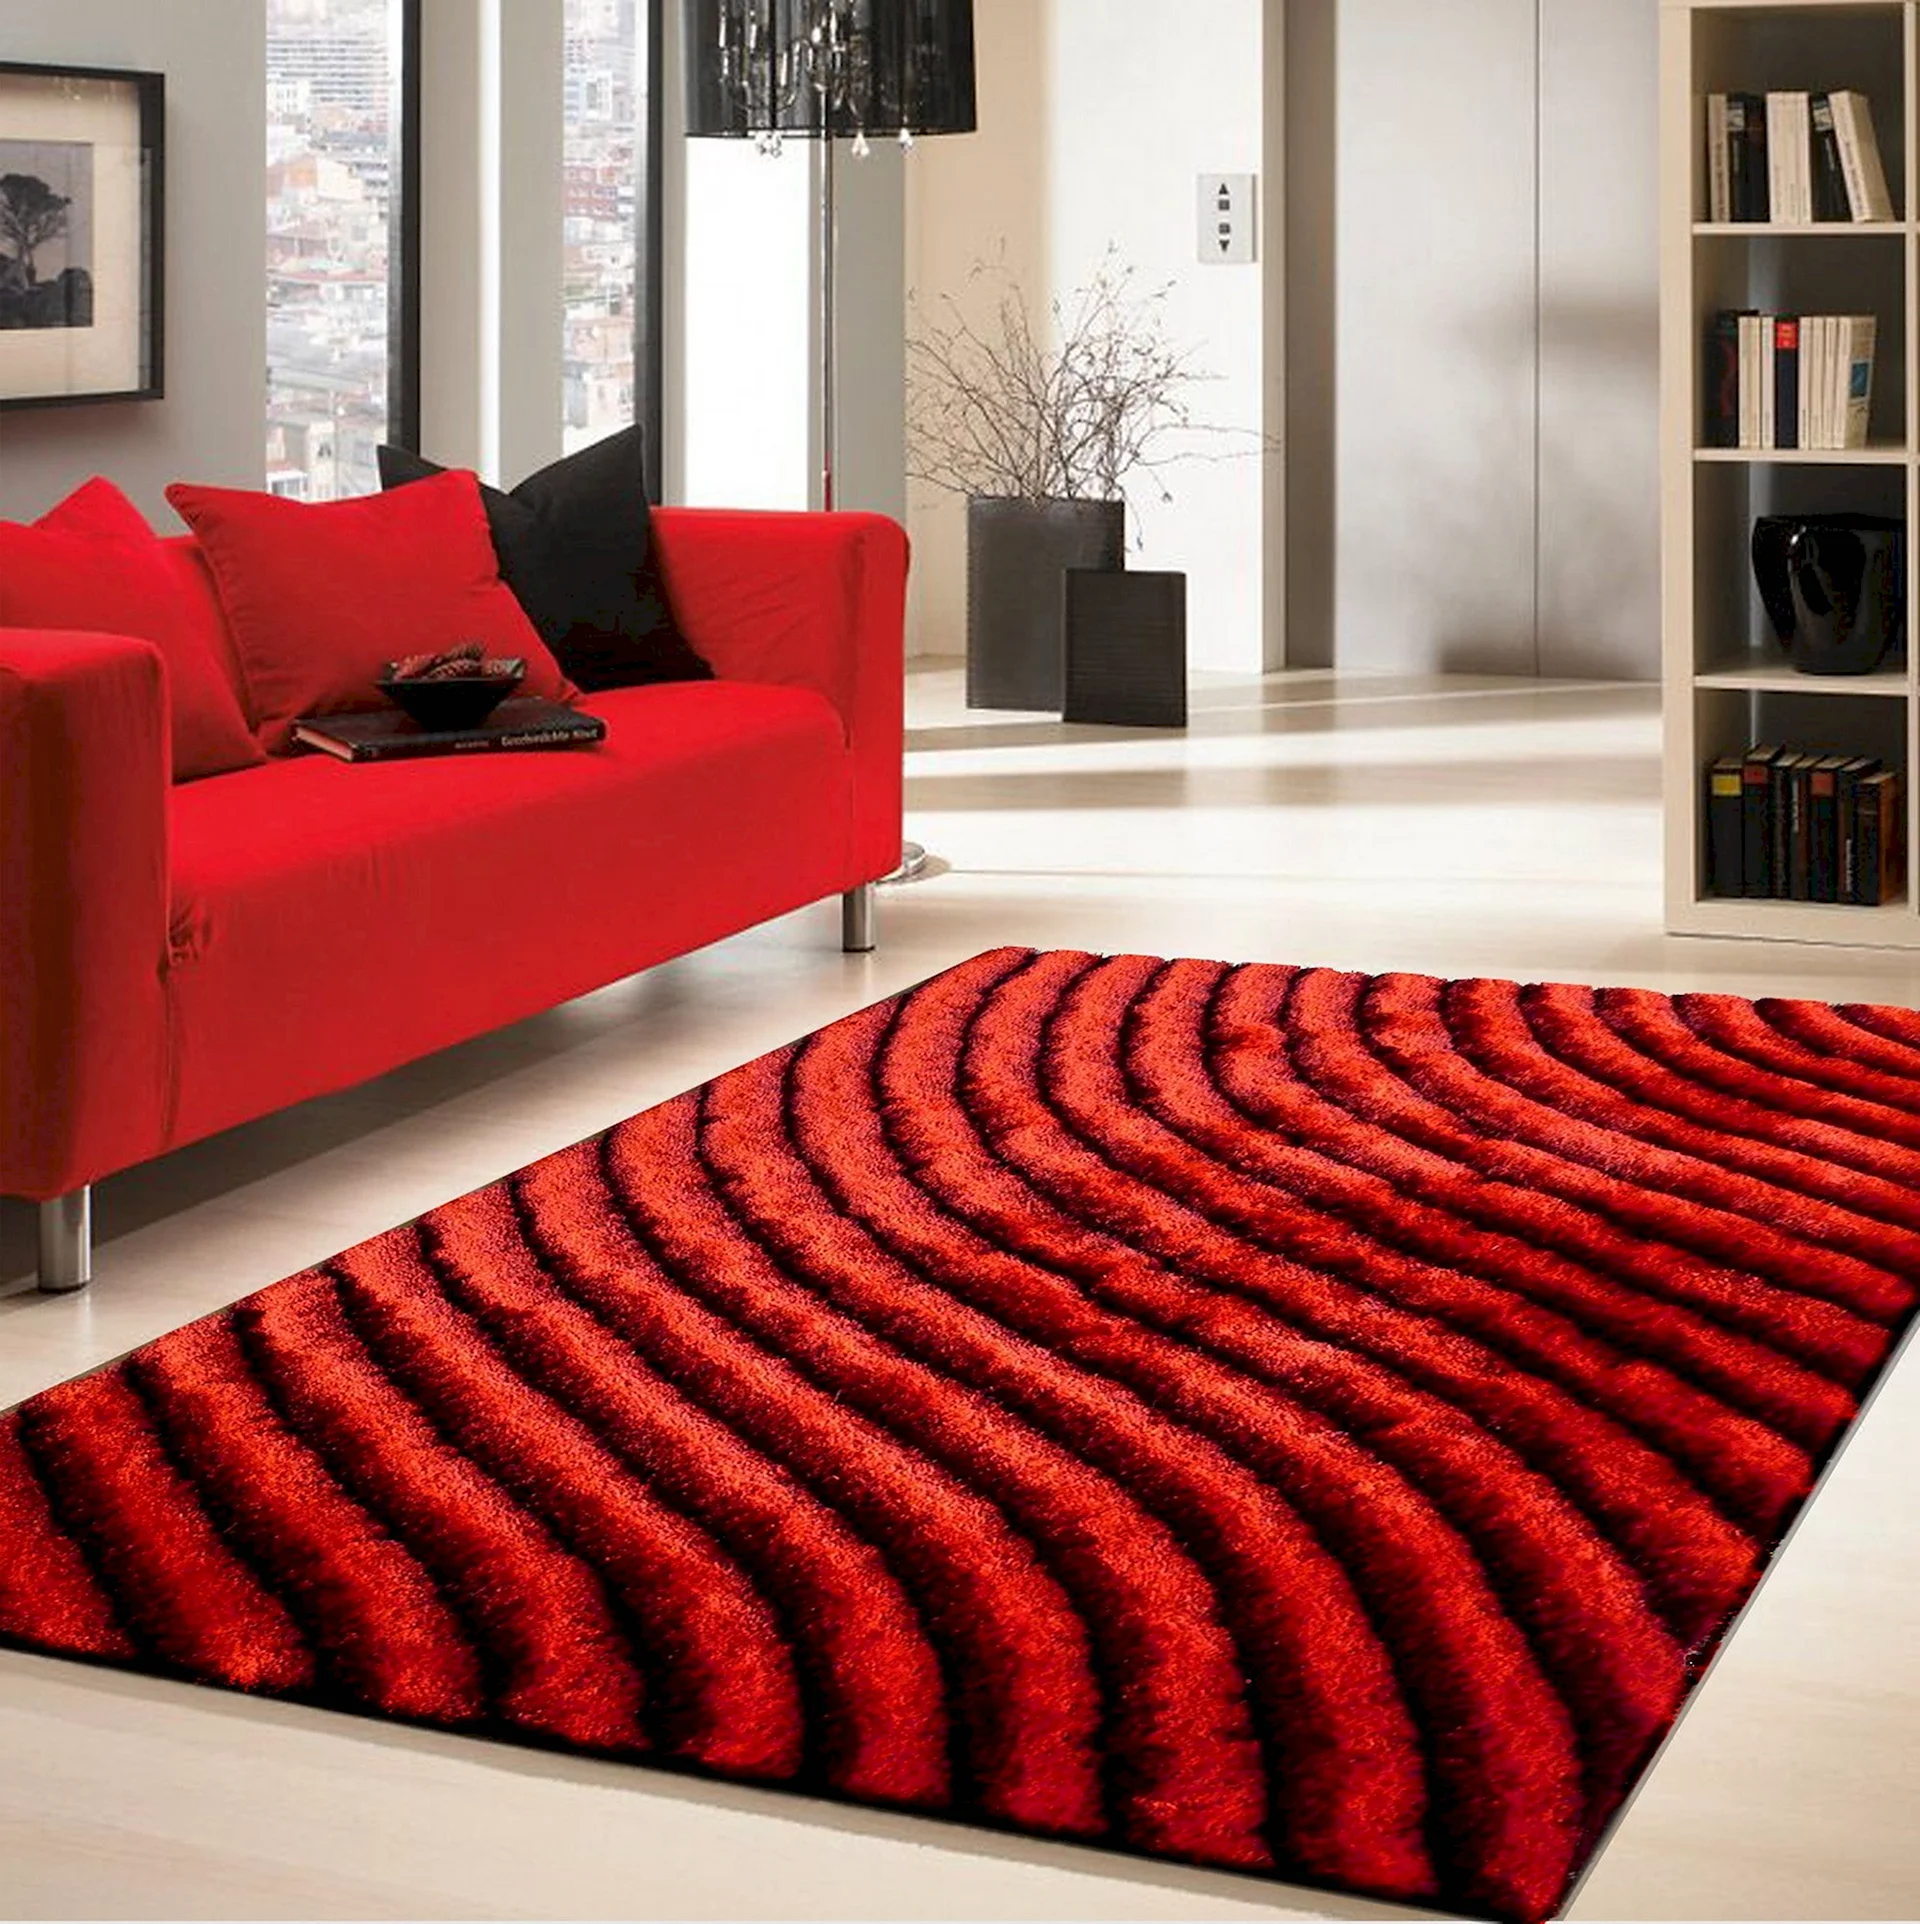 Спальня с красным ковром на полу